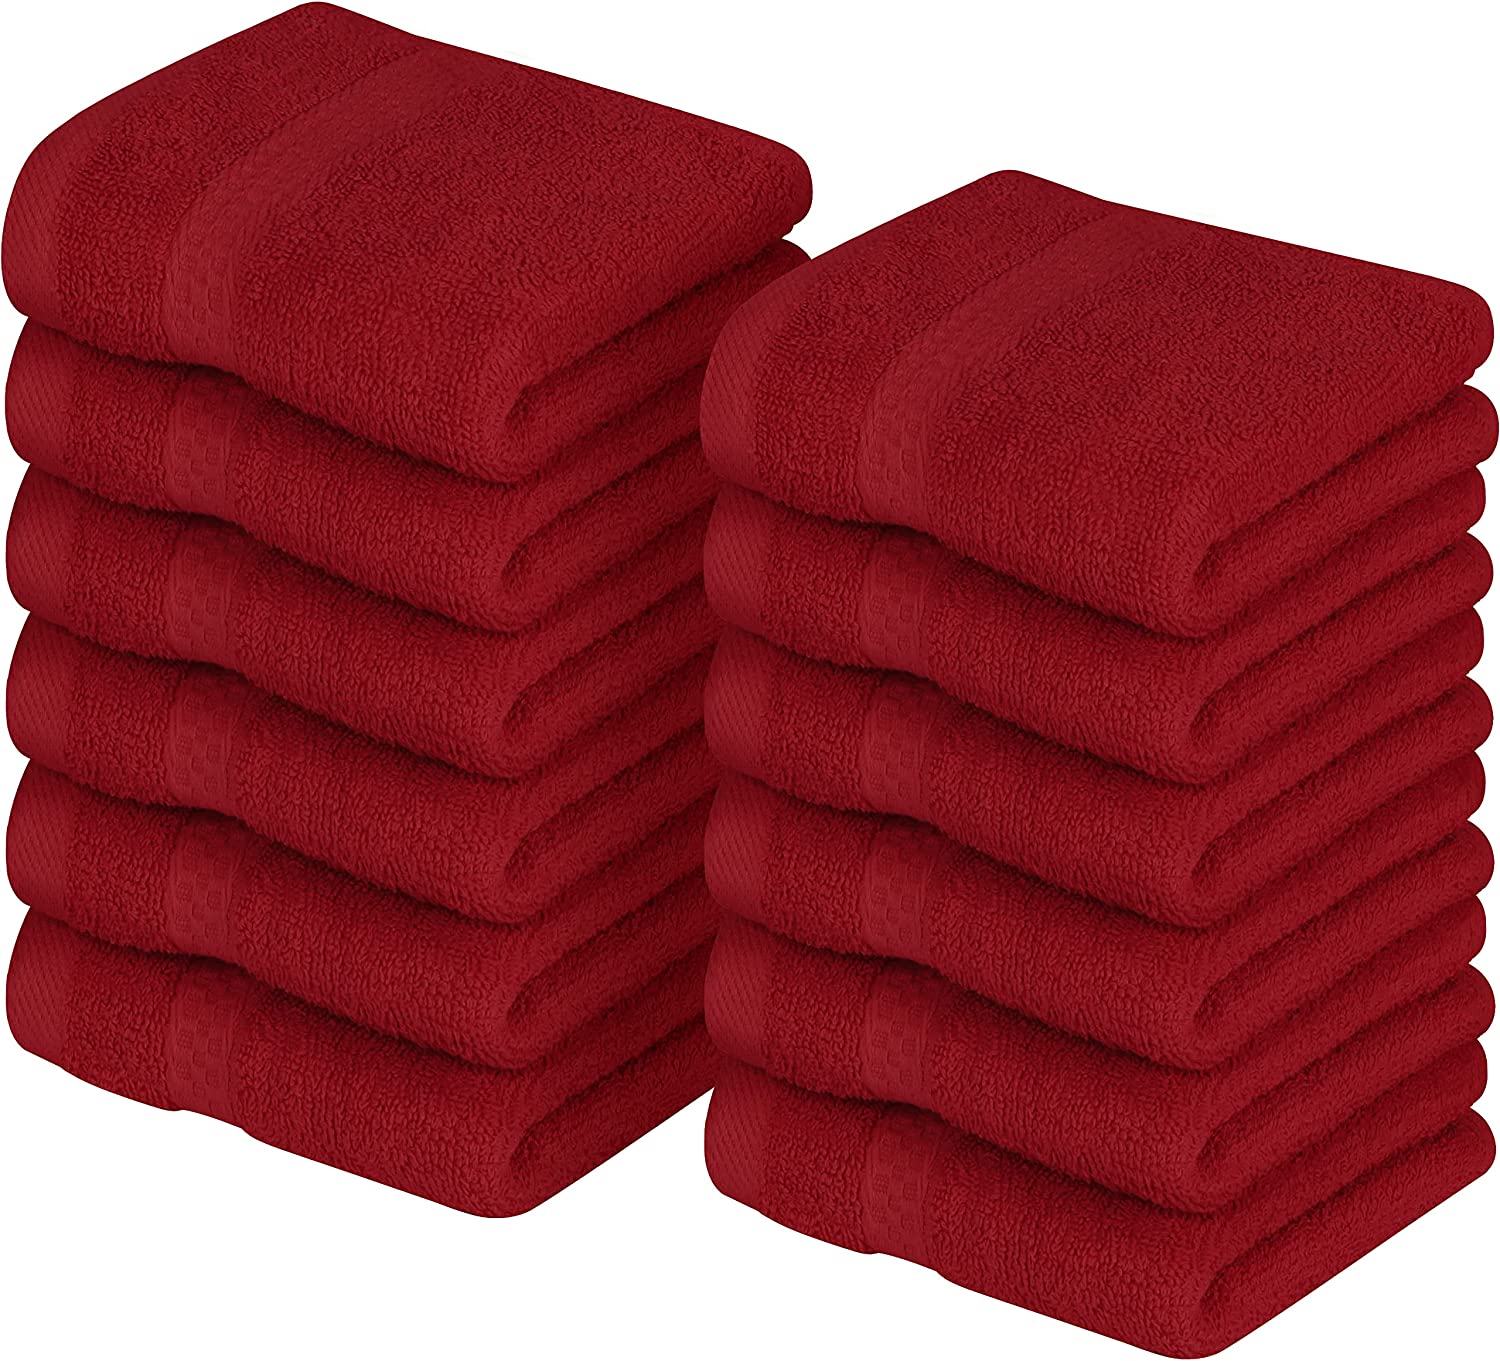  Utopia Towels - Hand Towel Set - Premium 100% Ring